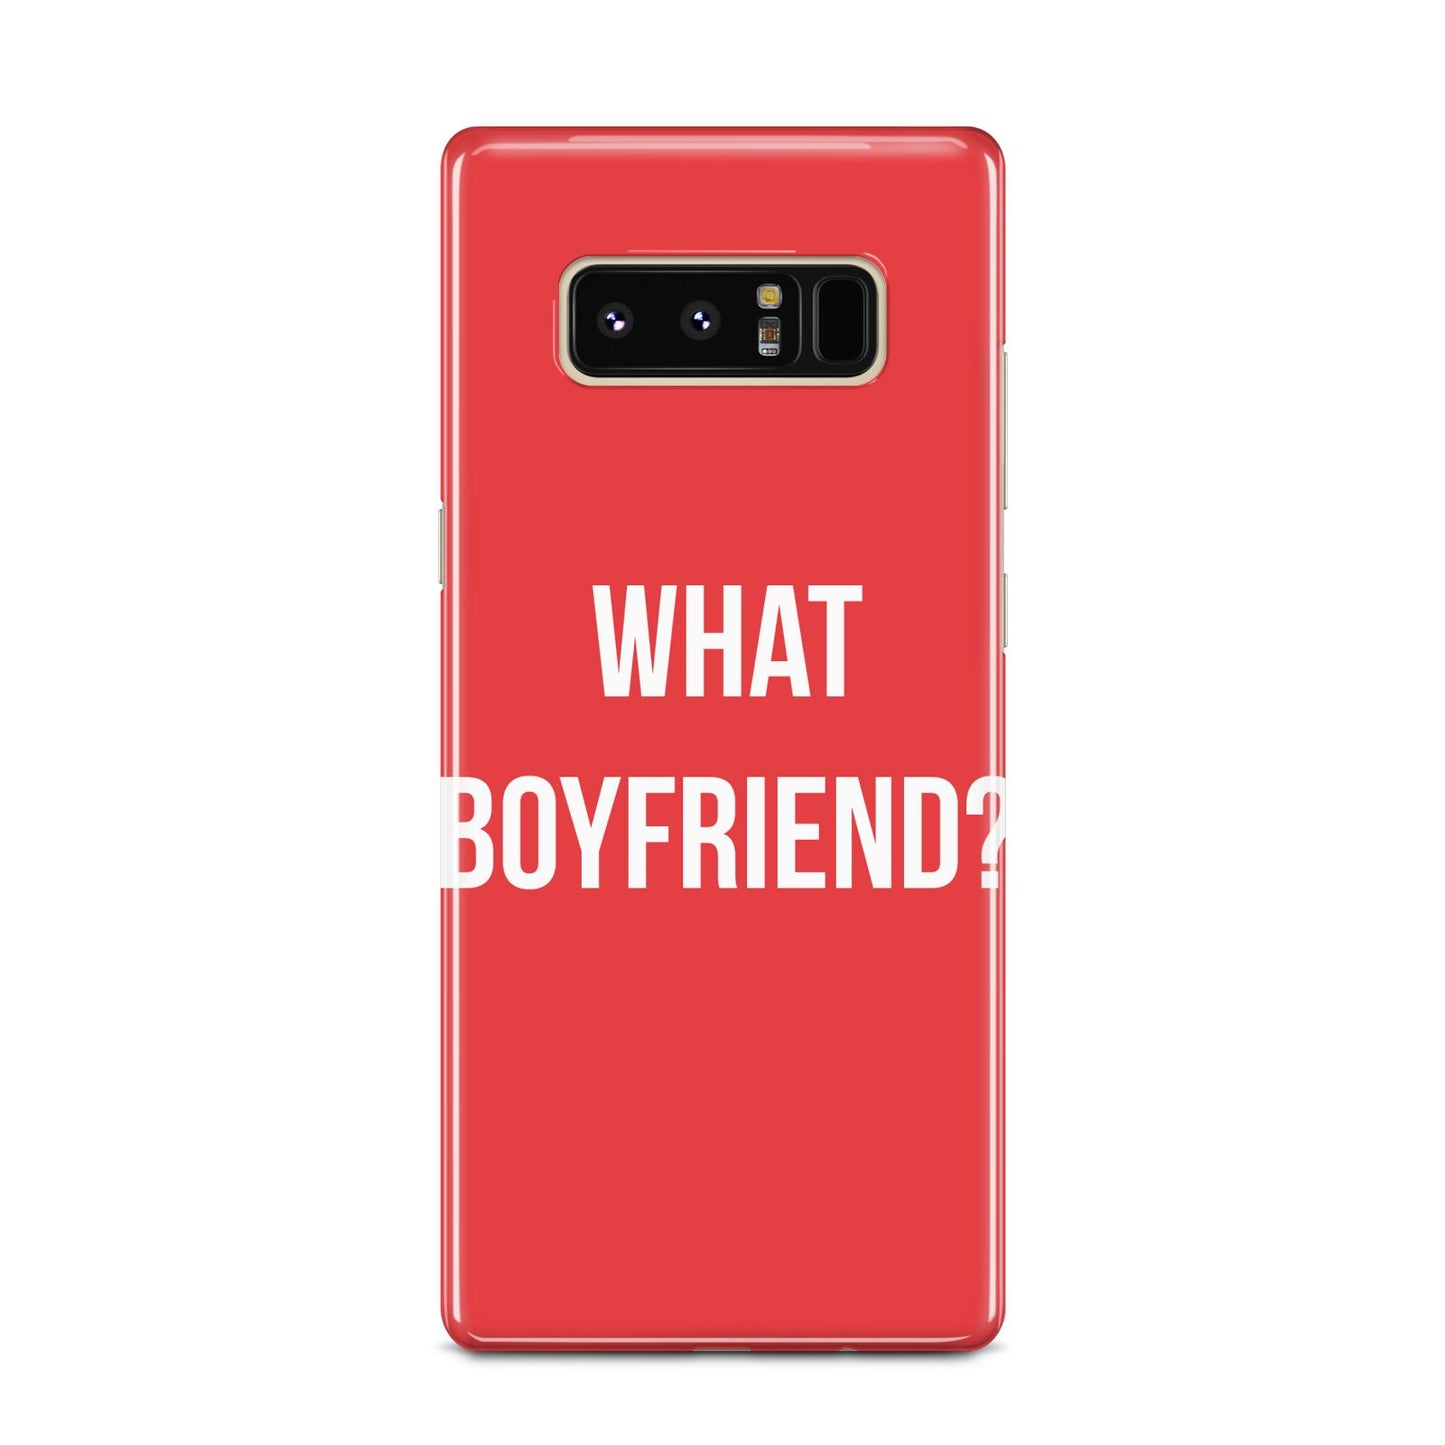 What Boyfriend Samsung Galaxy Note 8 Case